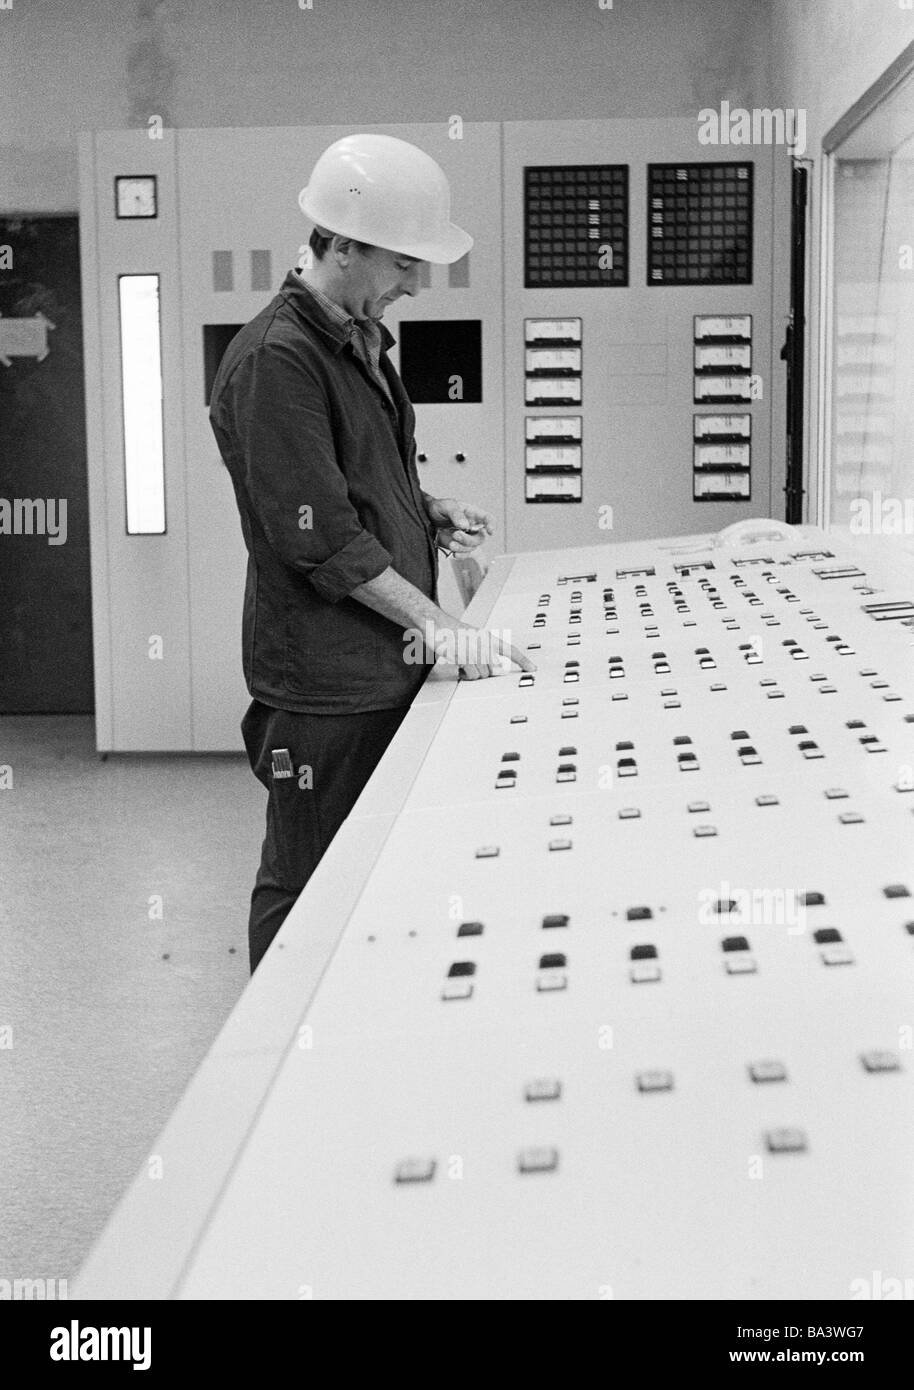 70, fotografía en blanco y negro, los negocios, el hombre con el sombrero duro se sitúa en un pupitre de mando, con edades de 30 a 40 años, el área de Ruhr, Renania del Norte-Westfalia Foto de stock